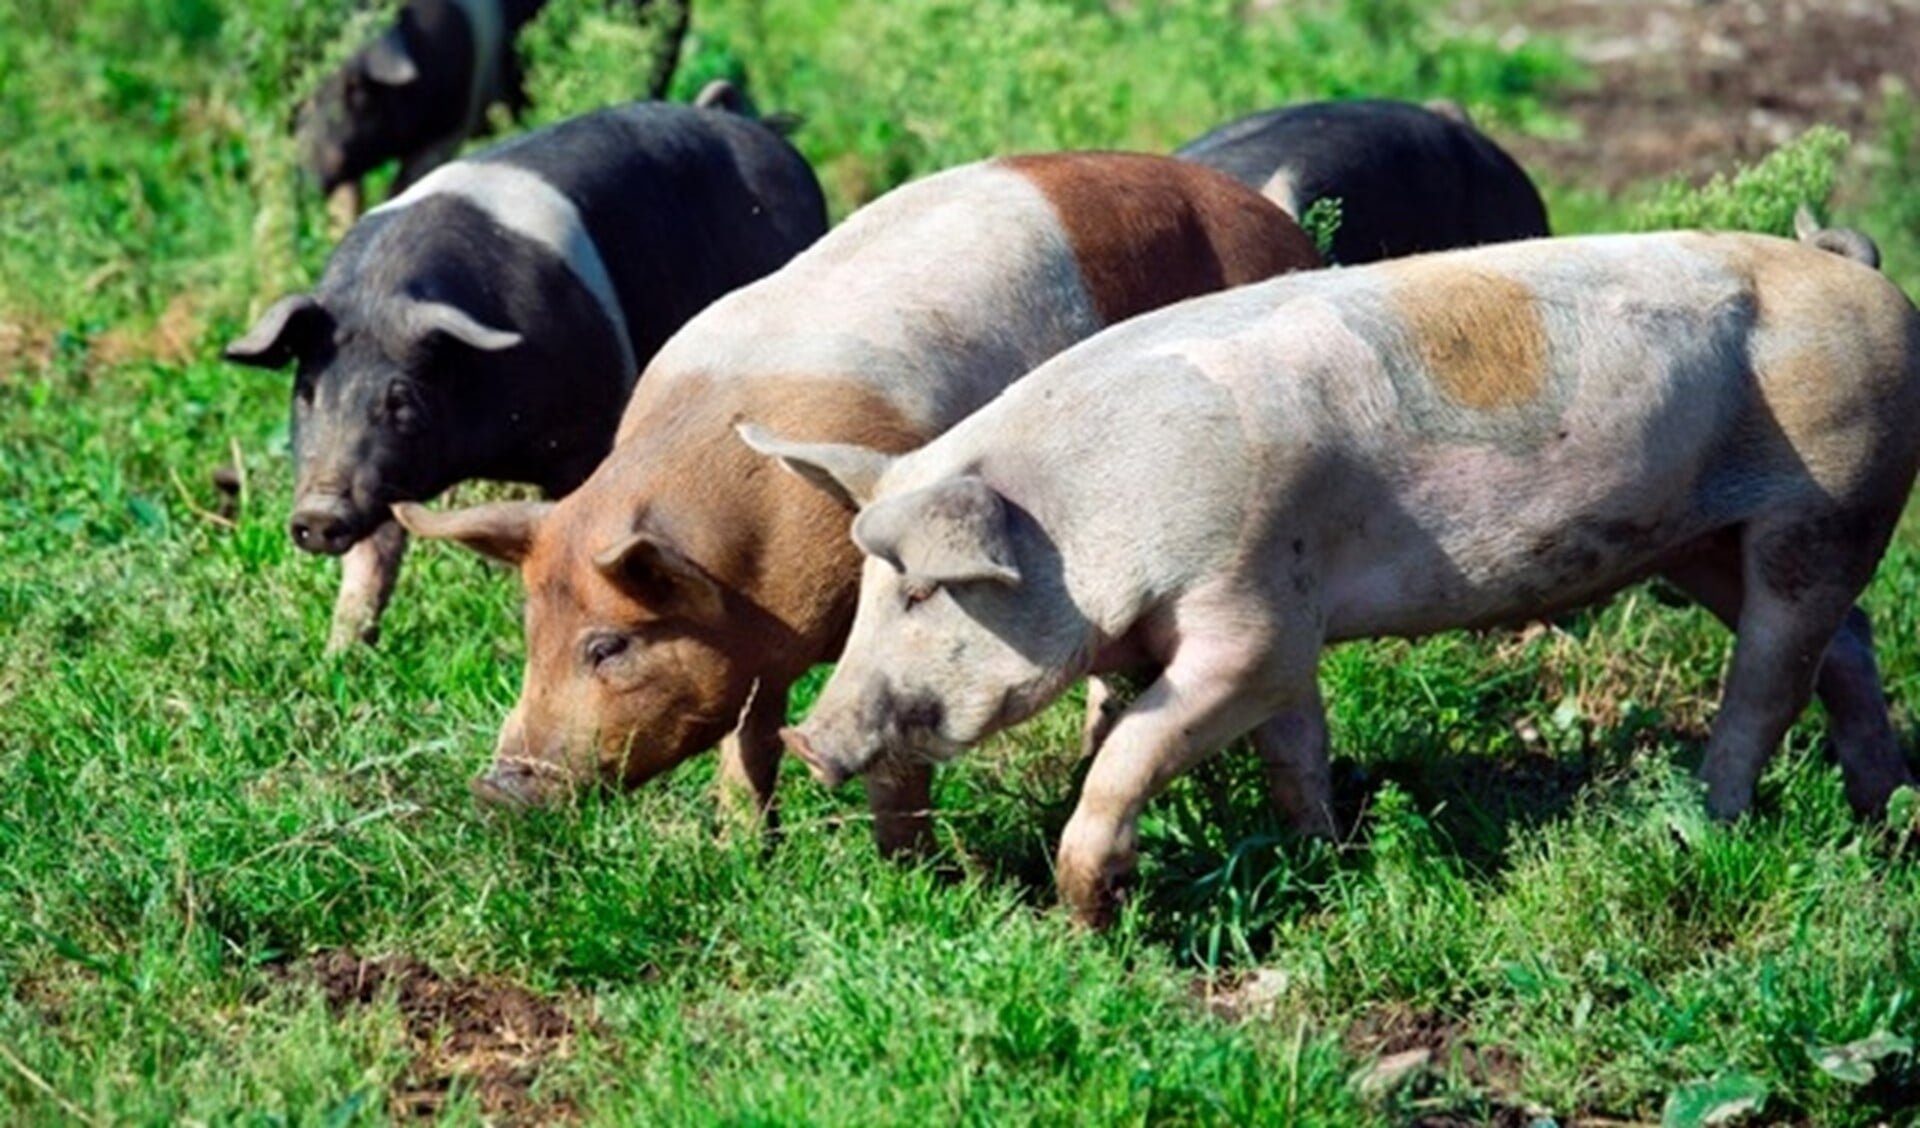 De varkens van Livar leven op kleinschalige boerderijen en kunnen lekker buiten lopen.